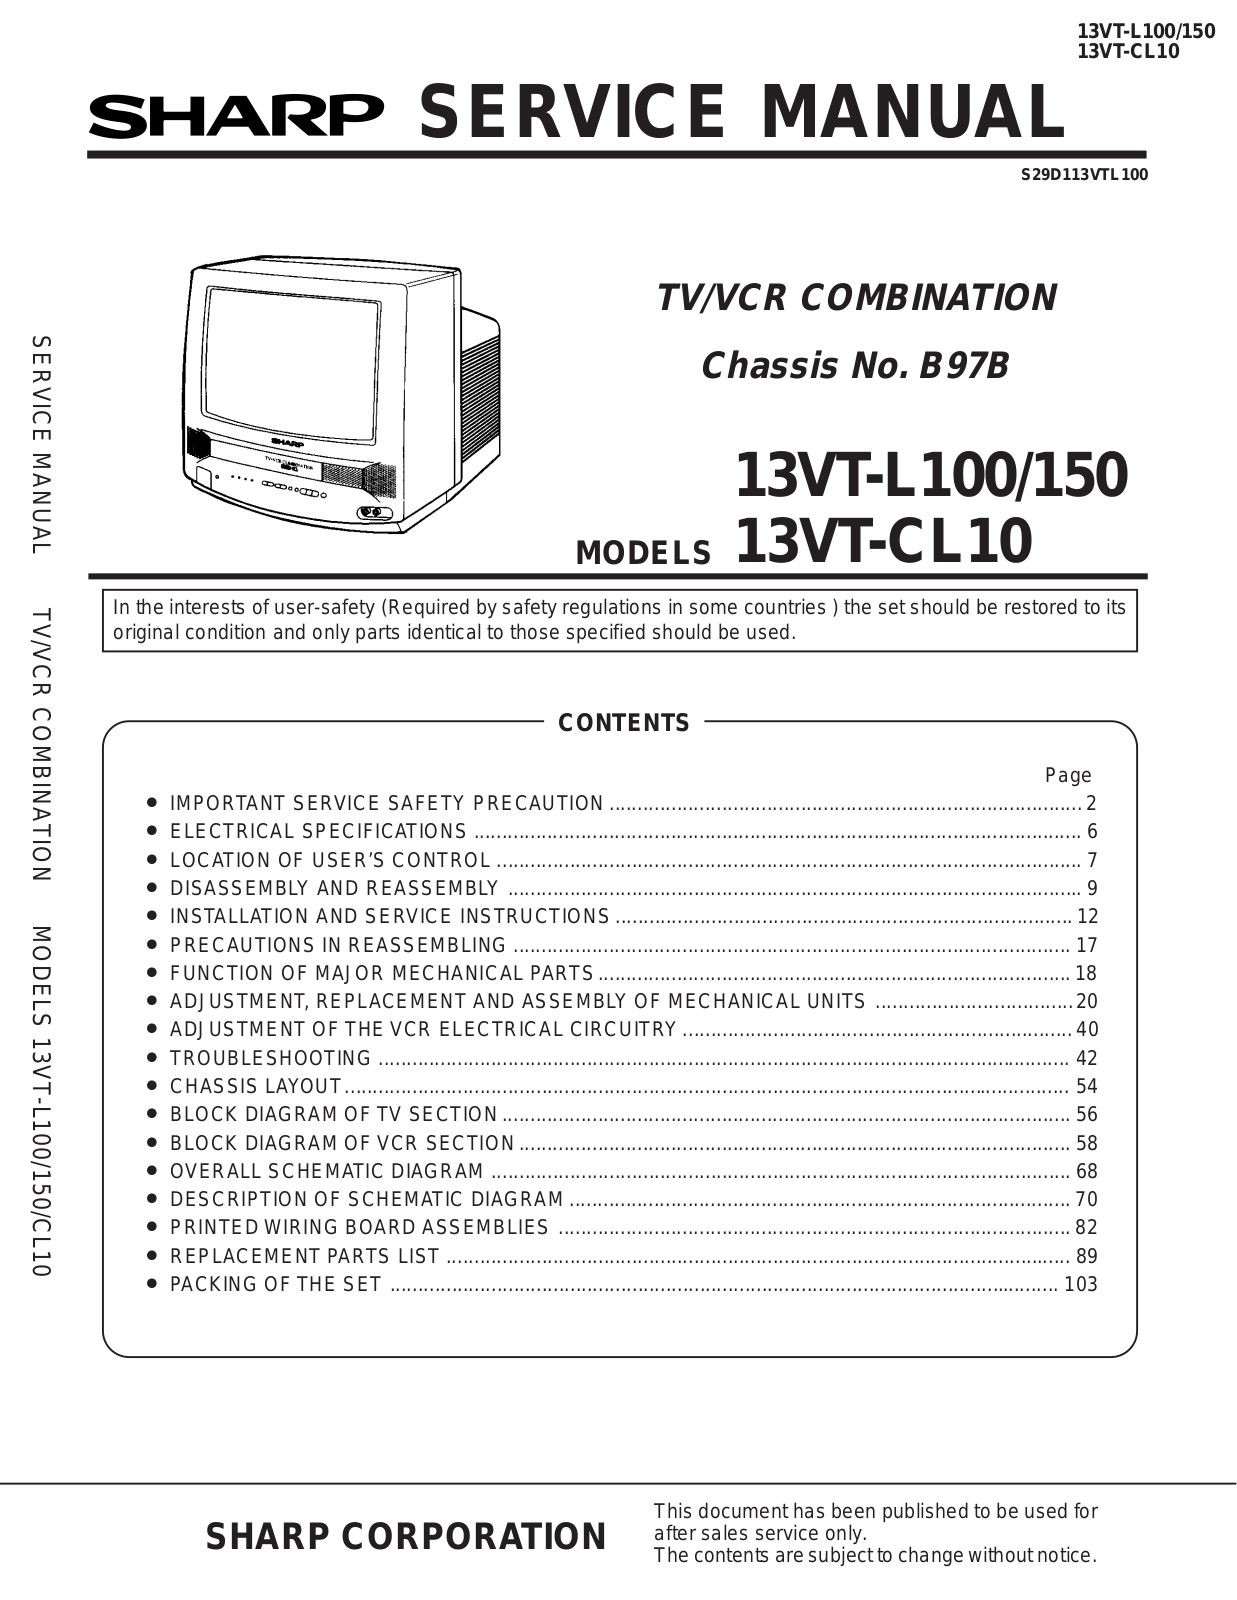 SHARP 13VT-L100, 13VT-L150, 13VT-CL10 Service Manual